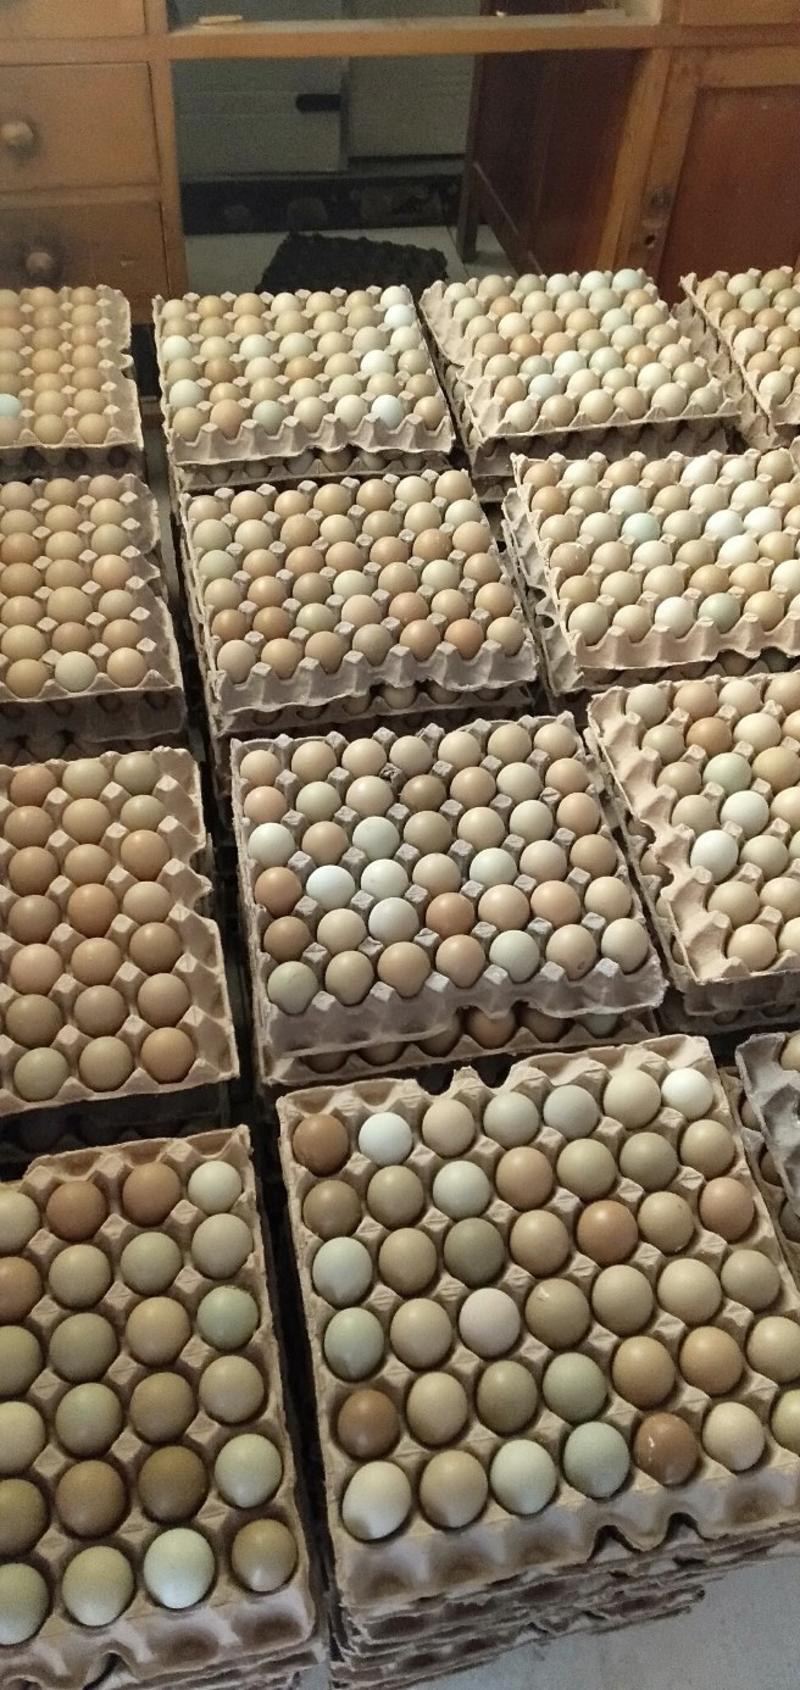 野鸡蛋。